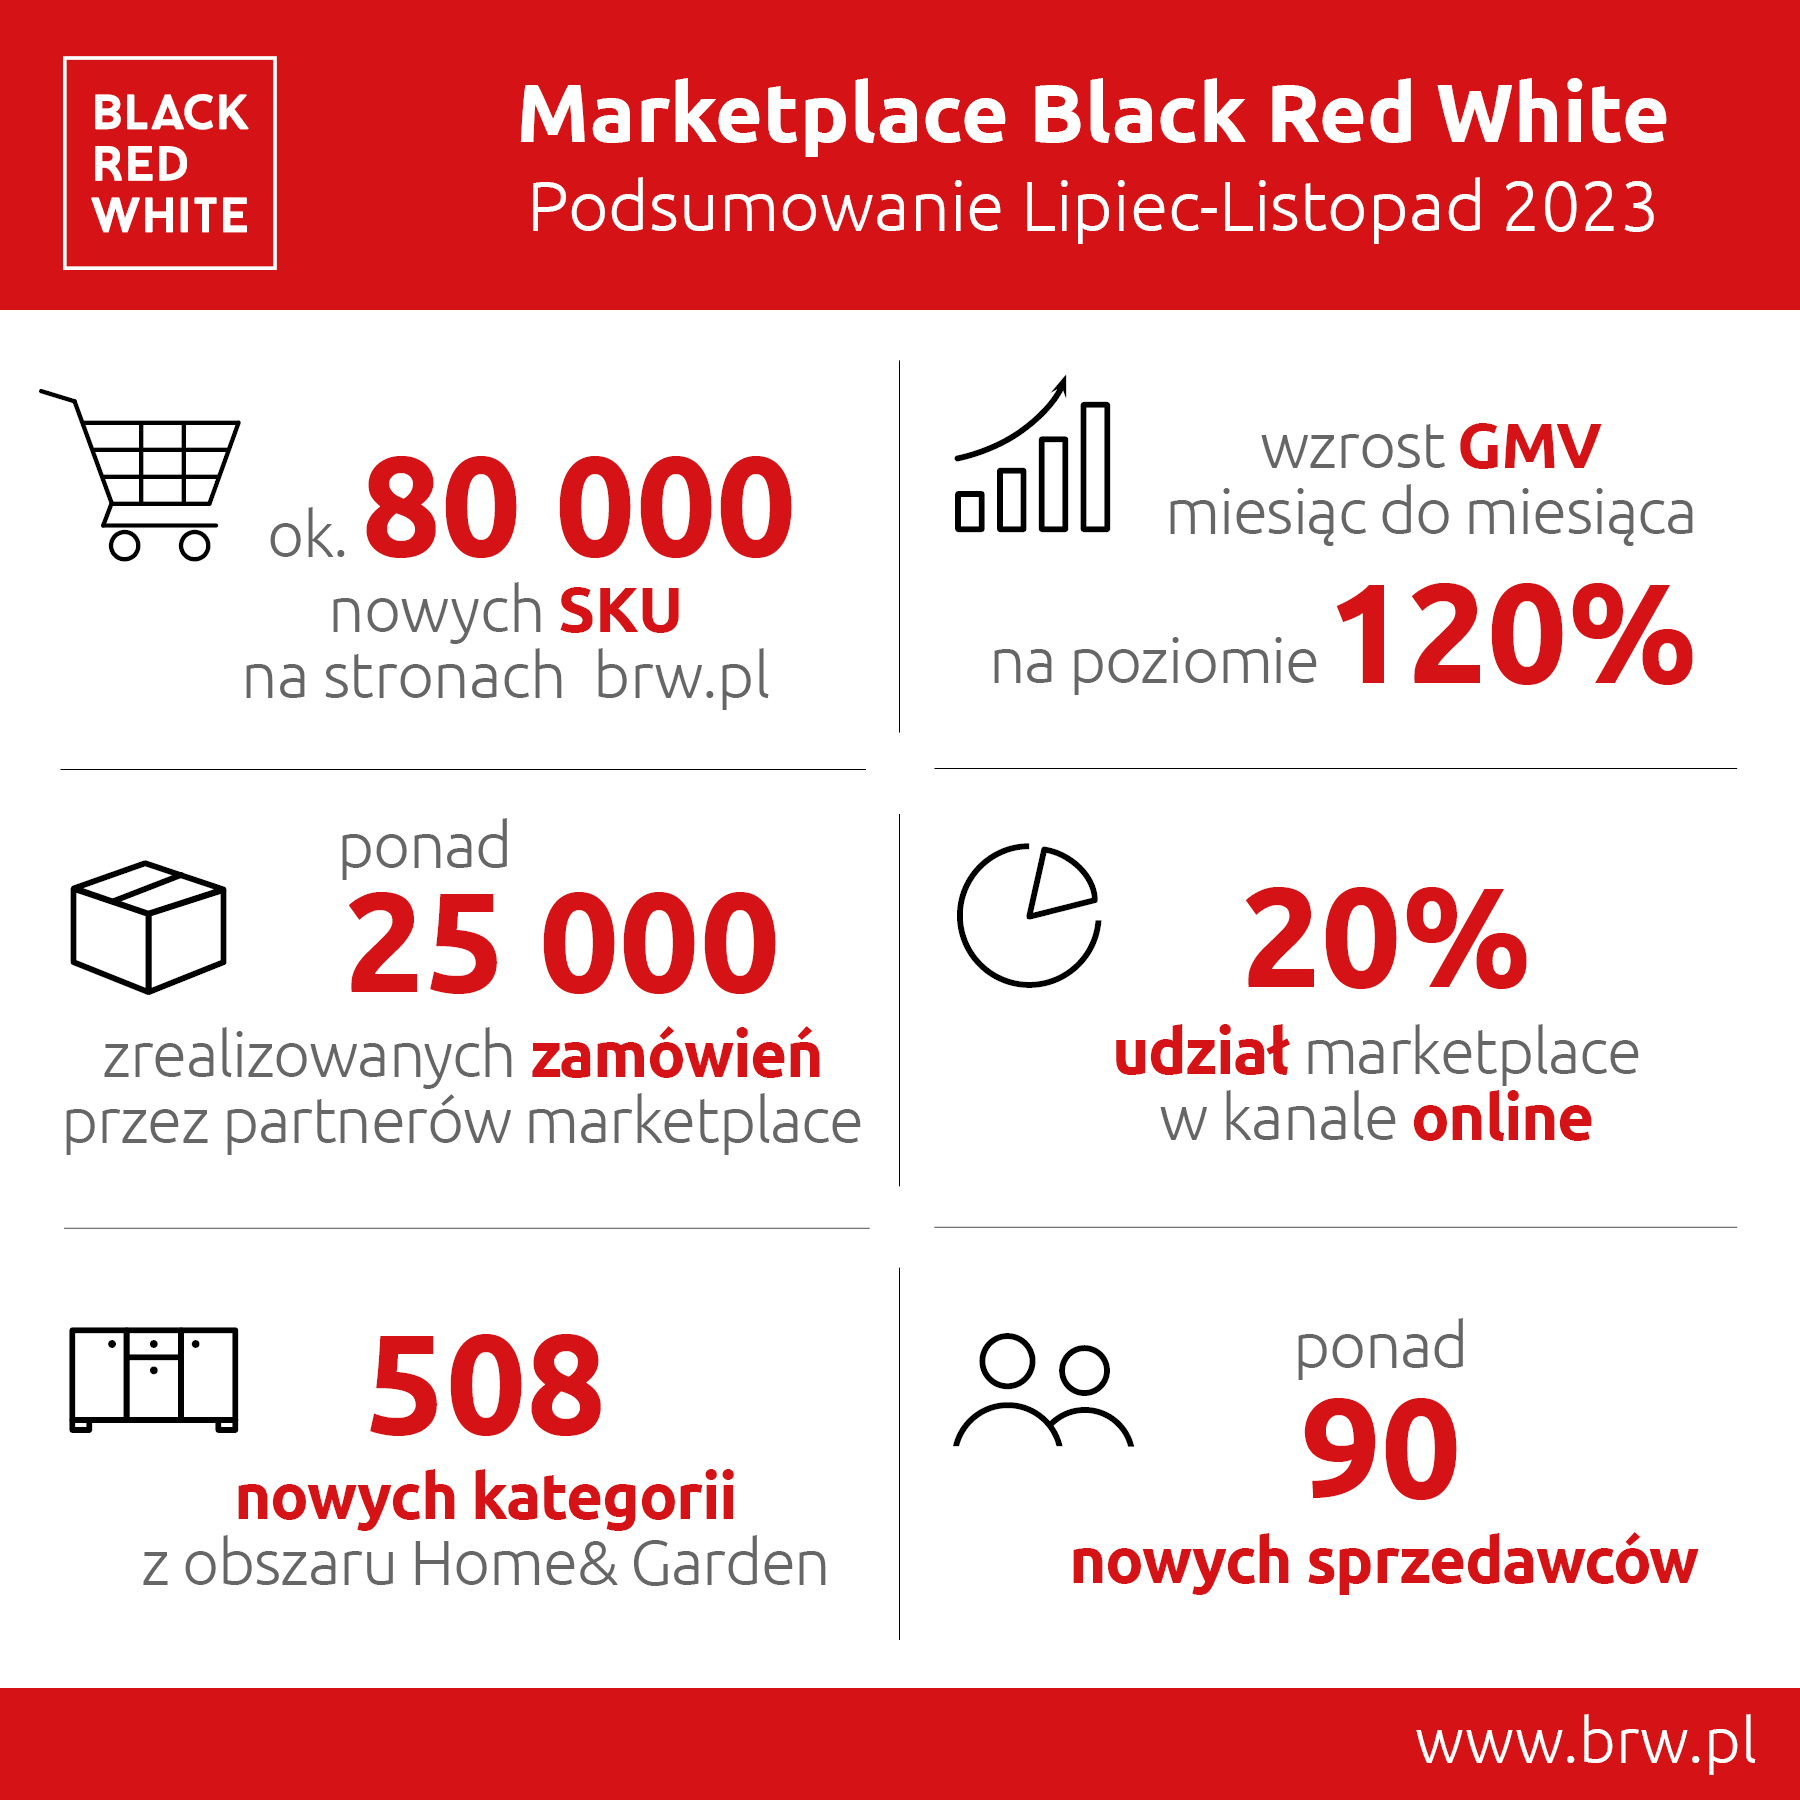 Marketplace Black Red White podsumowuje 5 miesięcy działalności